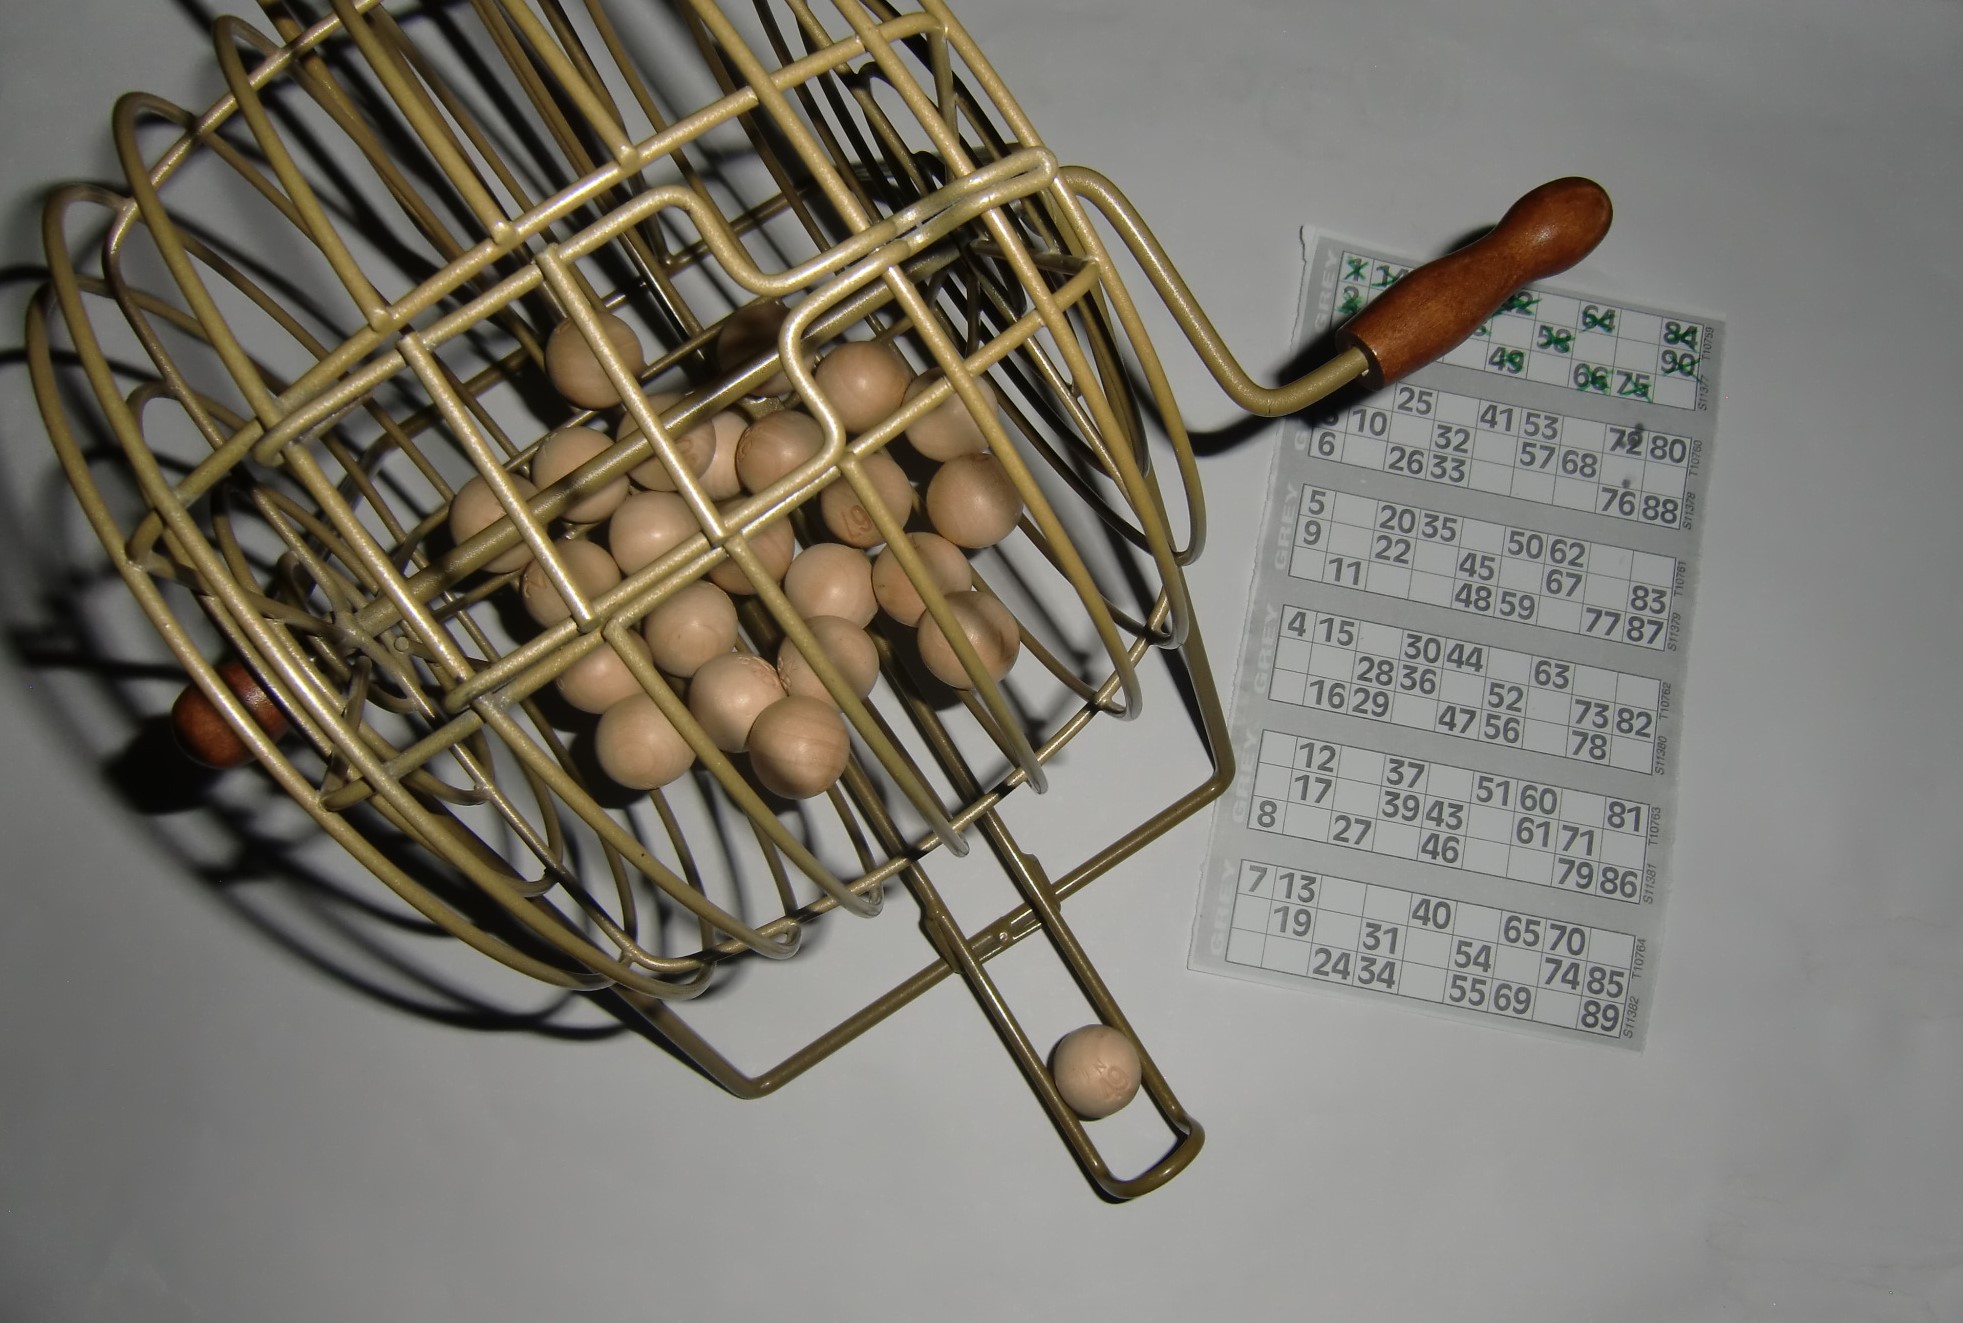 Bild zeigt eine Bingo-Trommel mit Kugeln auf diesen Zahlen sind, und ein Bingo-Spieleblatt mit verschiedenen Zahlen.